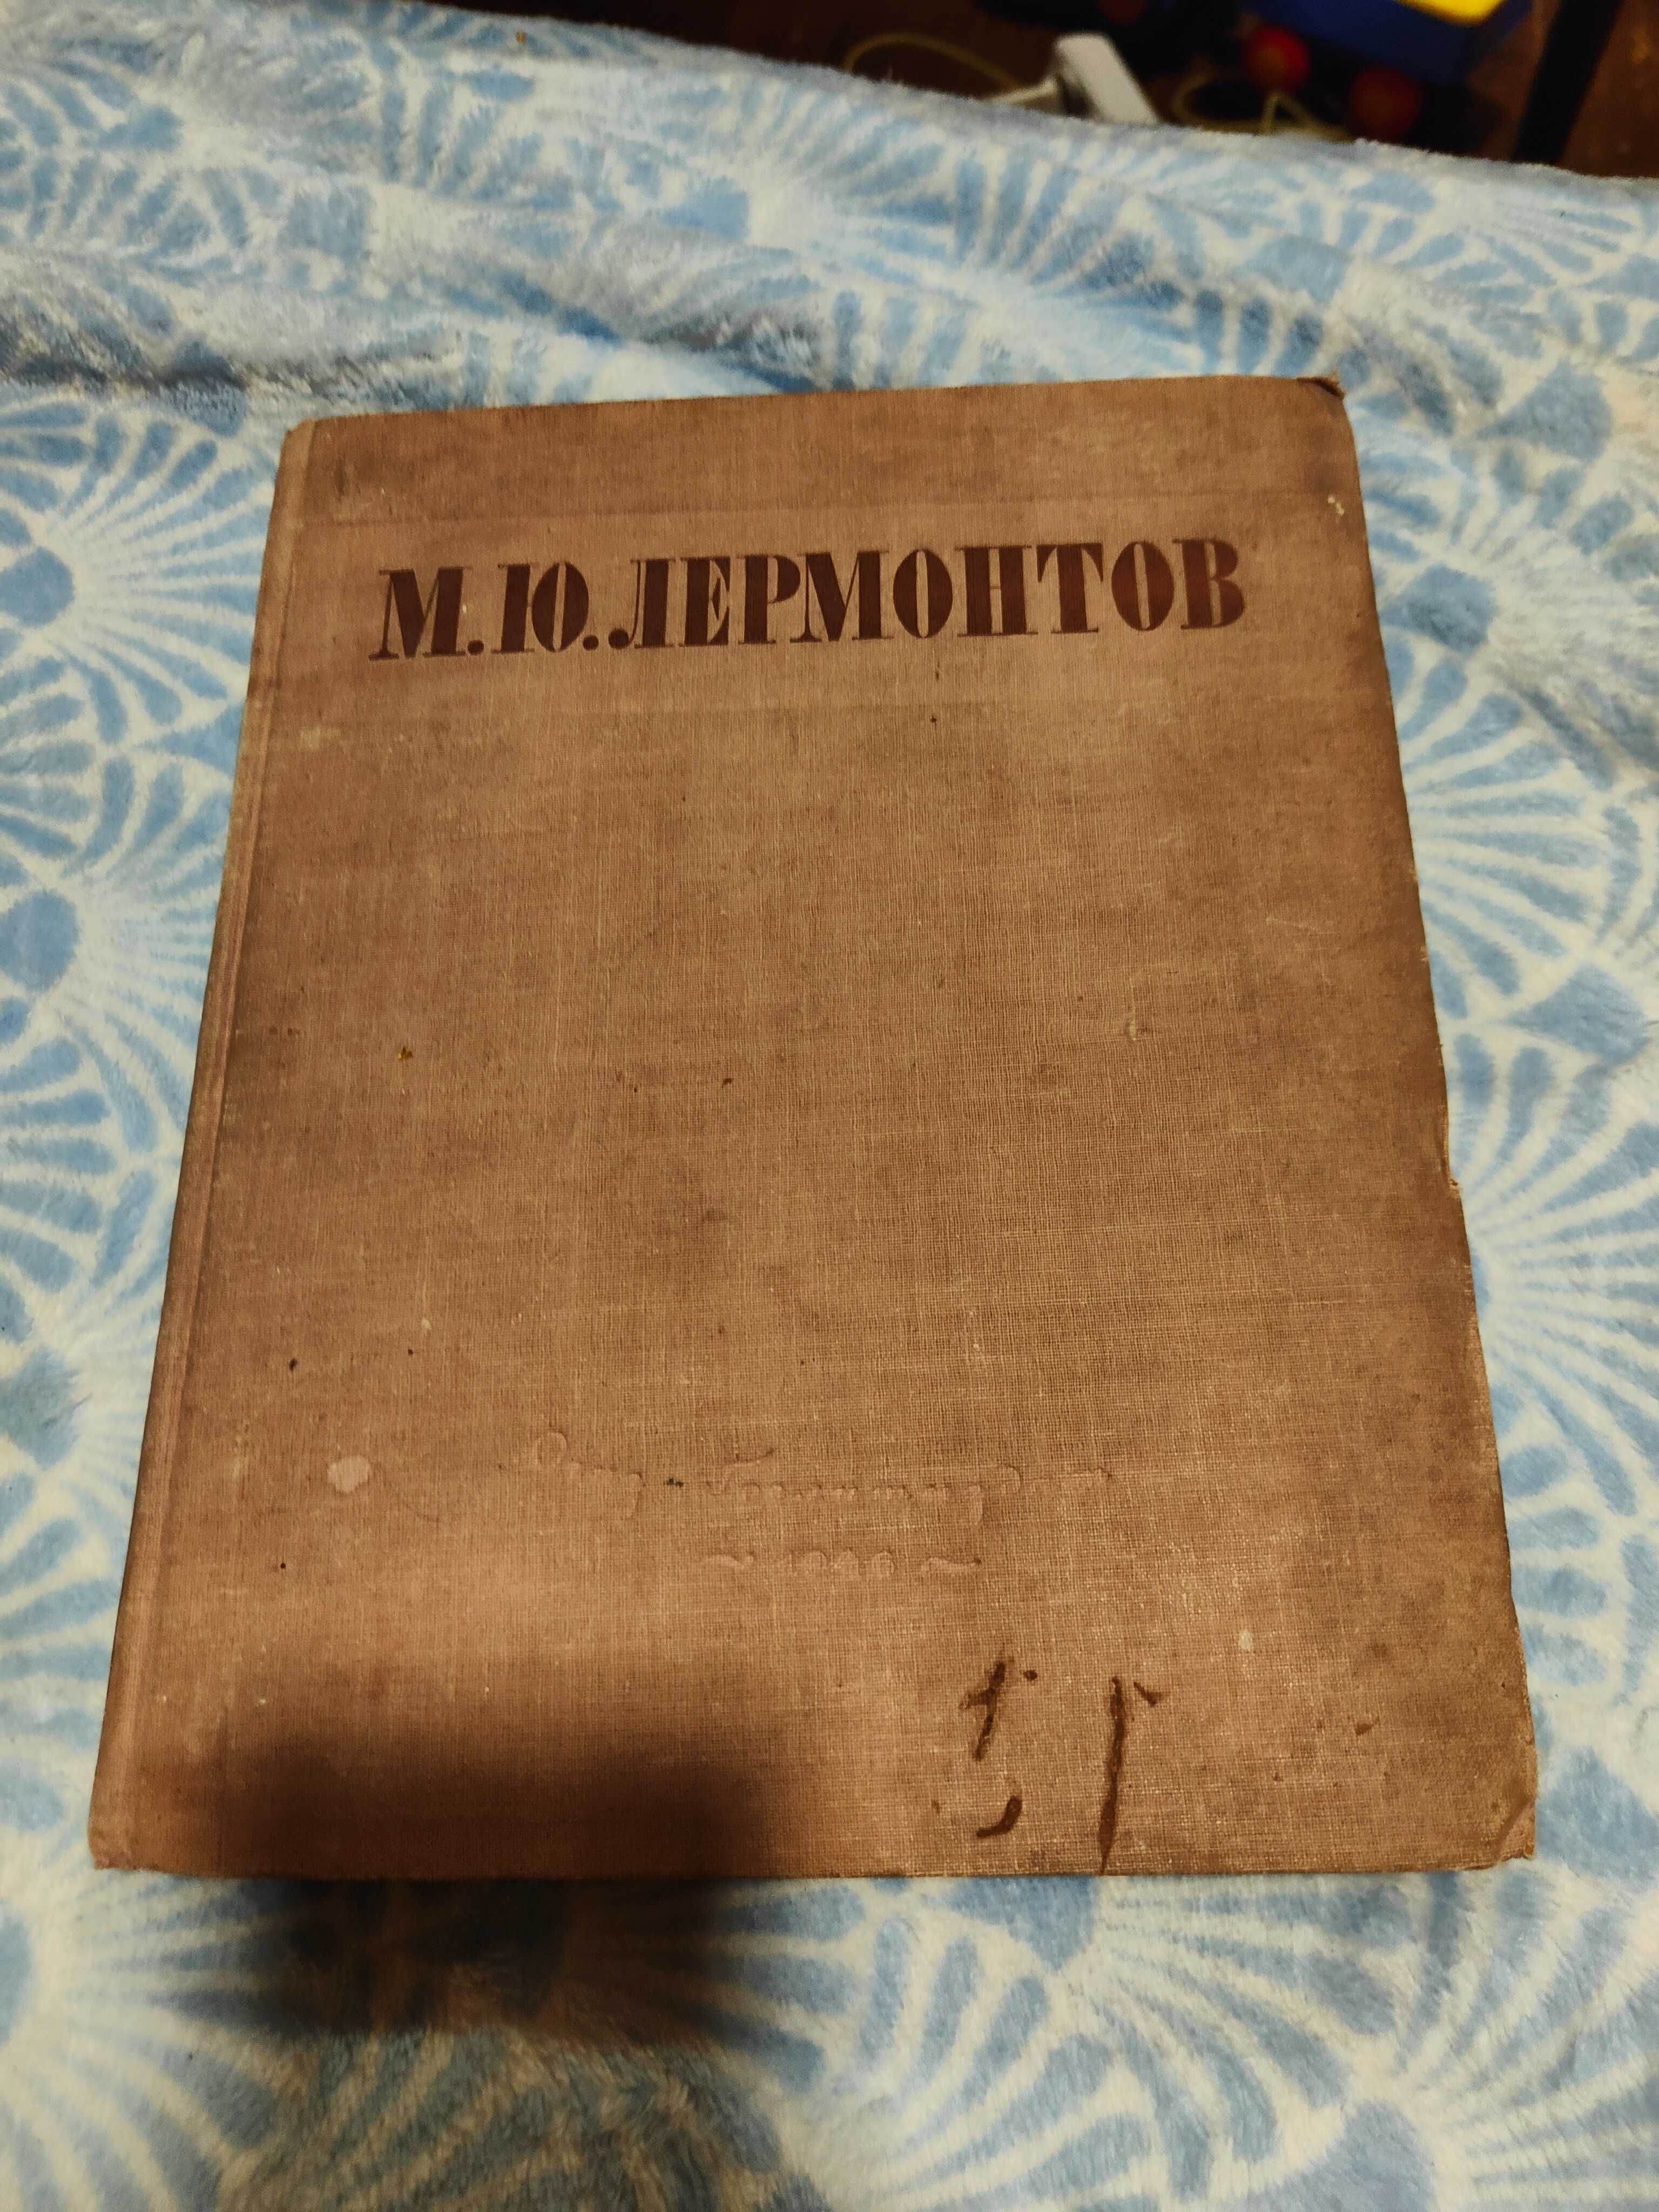 Лермонтов М Ю Избранные произведения 1946 ОГИЗ. А4 формат